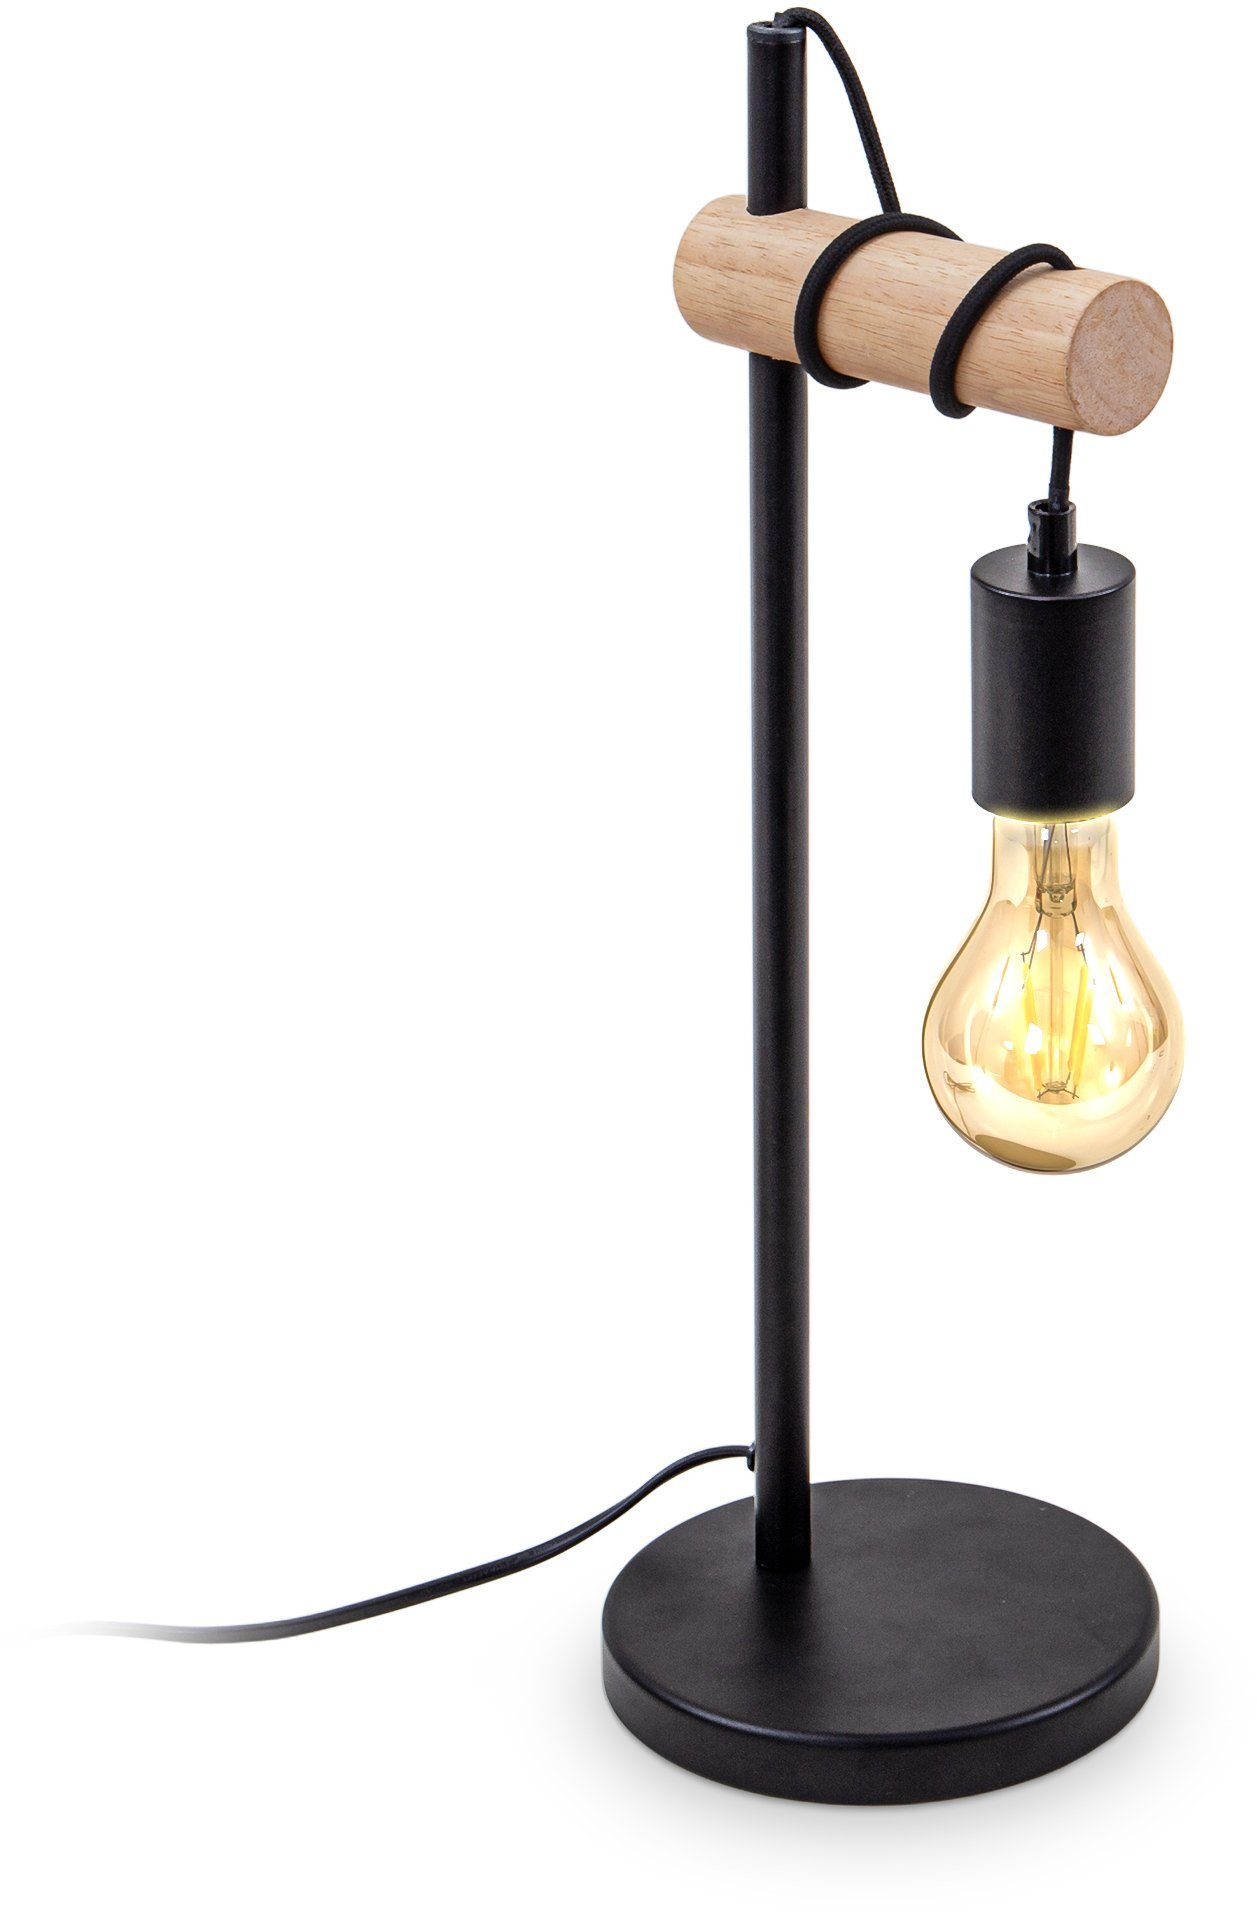 B.K.Licht Tischleuchte, Tischlampe 1 flammige Vintage Industrial Design Retro Lampe Stahl Holz Rund E27 ohne Leuchtmittel-Otto